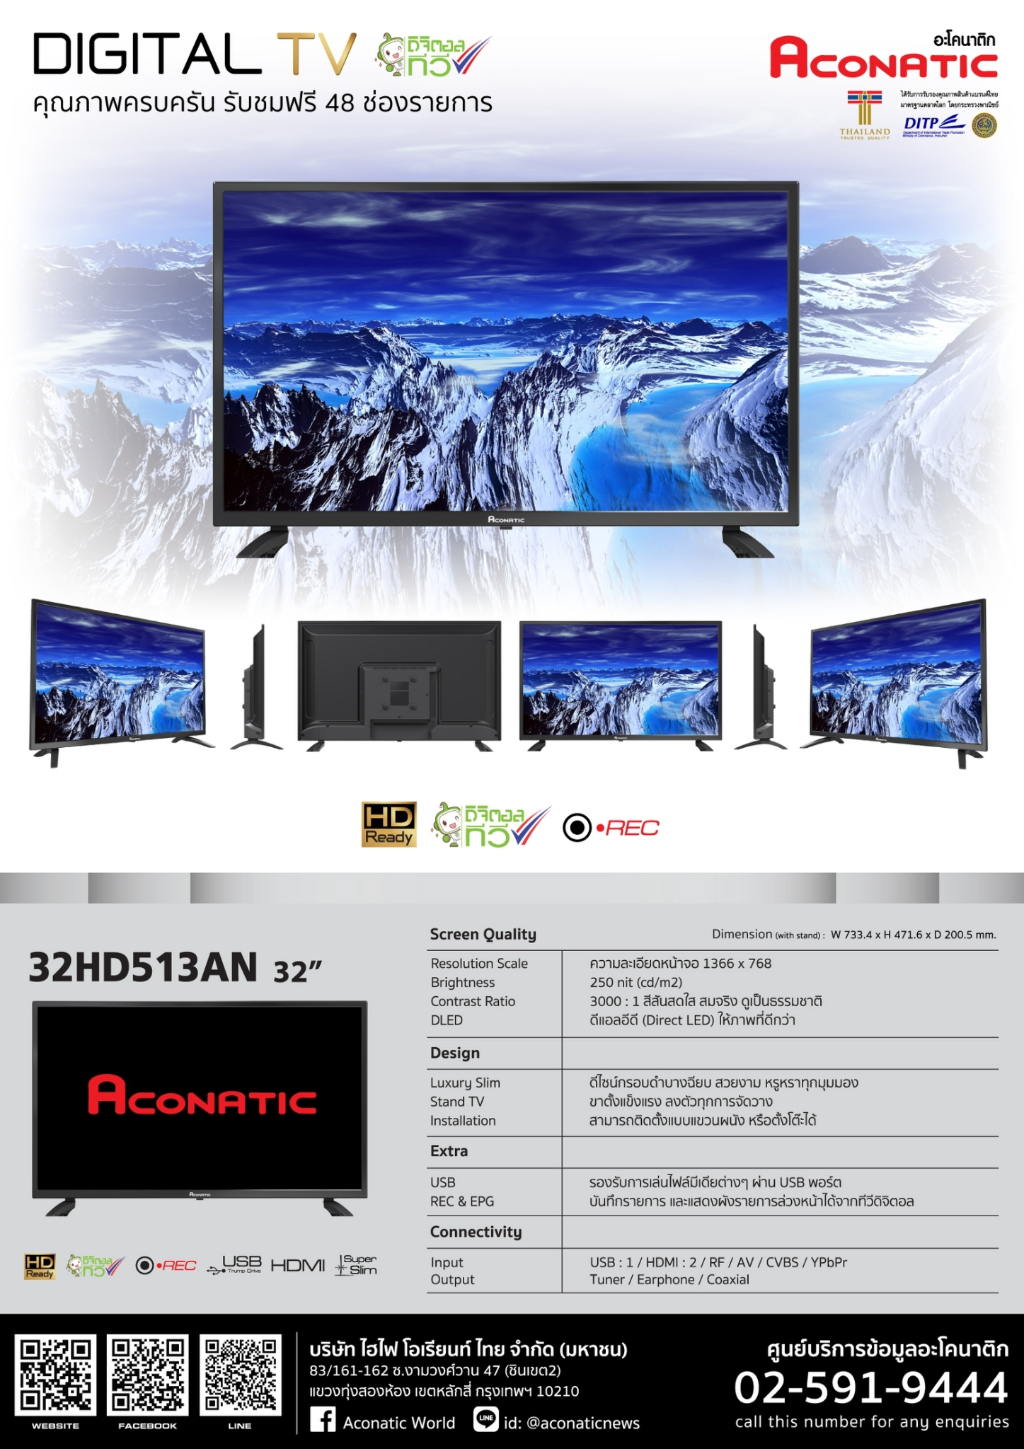 ลองดูภาพสินค้า Aconatic LED Digital TV HD แอลอีดี ดิจิตอลทีวี ขนาด 32 นิ้ว รุ่น 32HD513AN (รับประกัน 1 ปี)